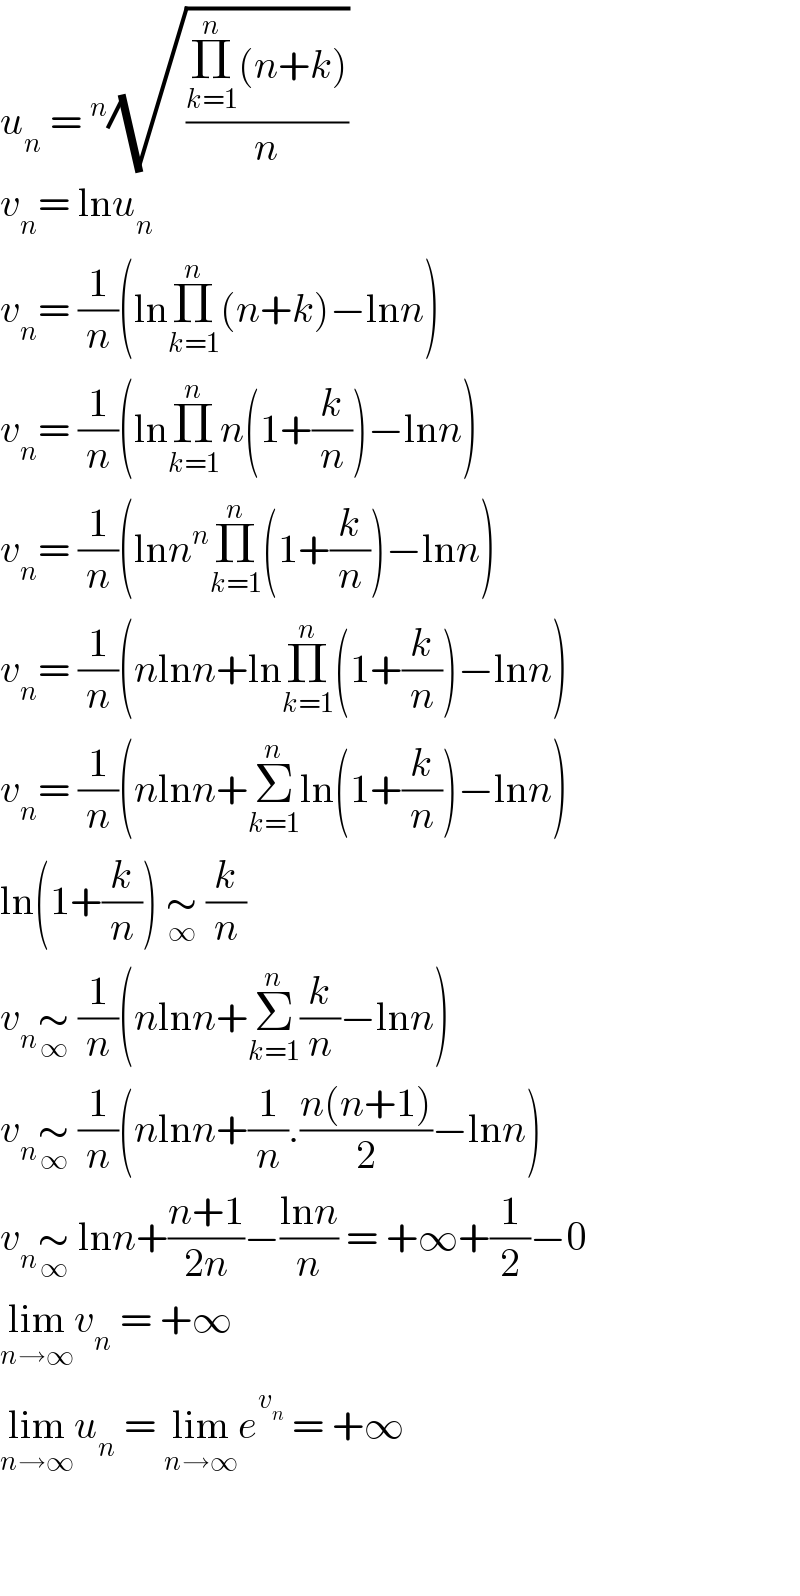 u_n  =^n (√((Π_(k=1) ^n (n+k))/n))  v_n = lnu_n   v_n = (1/n)(lnΠ_(k=1) ^n (n+k)−lnn)  v_n = (1/n)(lnΠ_(k=1) ^n n(1+(k/n))−lnn)  v_n = (1/n)(lnn^n Π_(k=1) ^n (1+(k/n))−lnn)  v_n = (1/n)(nlnn+lnΠ_(k=1) ^n (1+(k/n))−lnn)  v_n = (1/n)(nlnn+Σ_(k=1) ^n ln(1+(k/n))−lnn)  ln(1+(k/n)) ∼_∞  (k/n)  v_n ∼_∞  (1/n)(nlnn+Σ_(k=1) ^n (k/n)−lnn)  v_n ∼_∞  (1/n)(nlnn+(1/n).((n(n+1))/2)−lnn)  v_n ∼_∞  lnn+((n+1)/(2n))−((lnn)/n) = +∞+(1/2)−0  lim_(n→∞) v_n  = +∞  lim_(n→∞) u_n  = lim_(n→∞) e^v_n   = +∞      